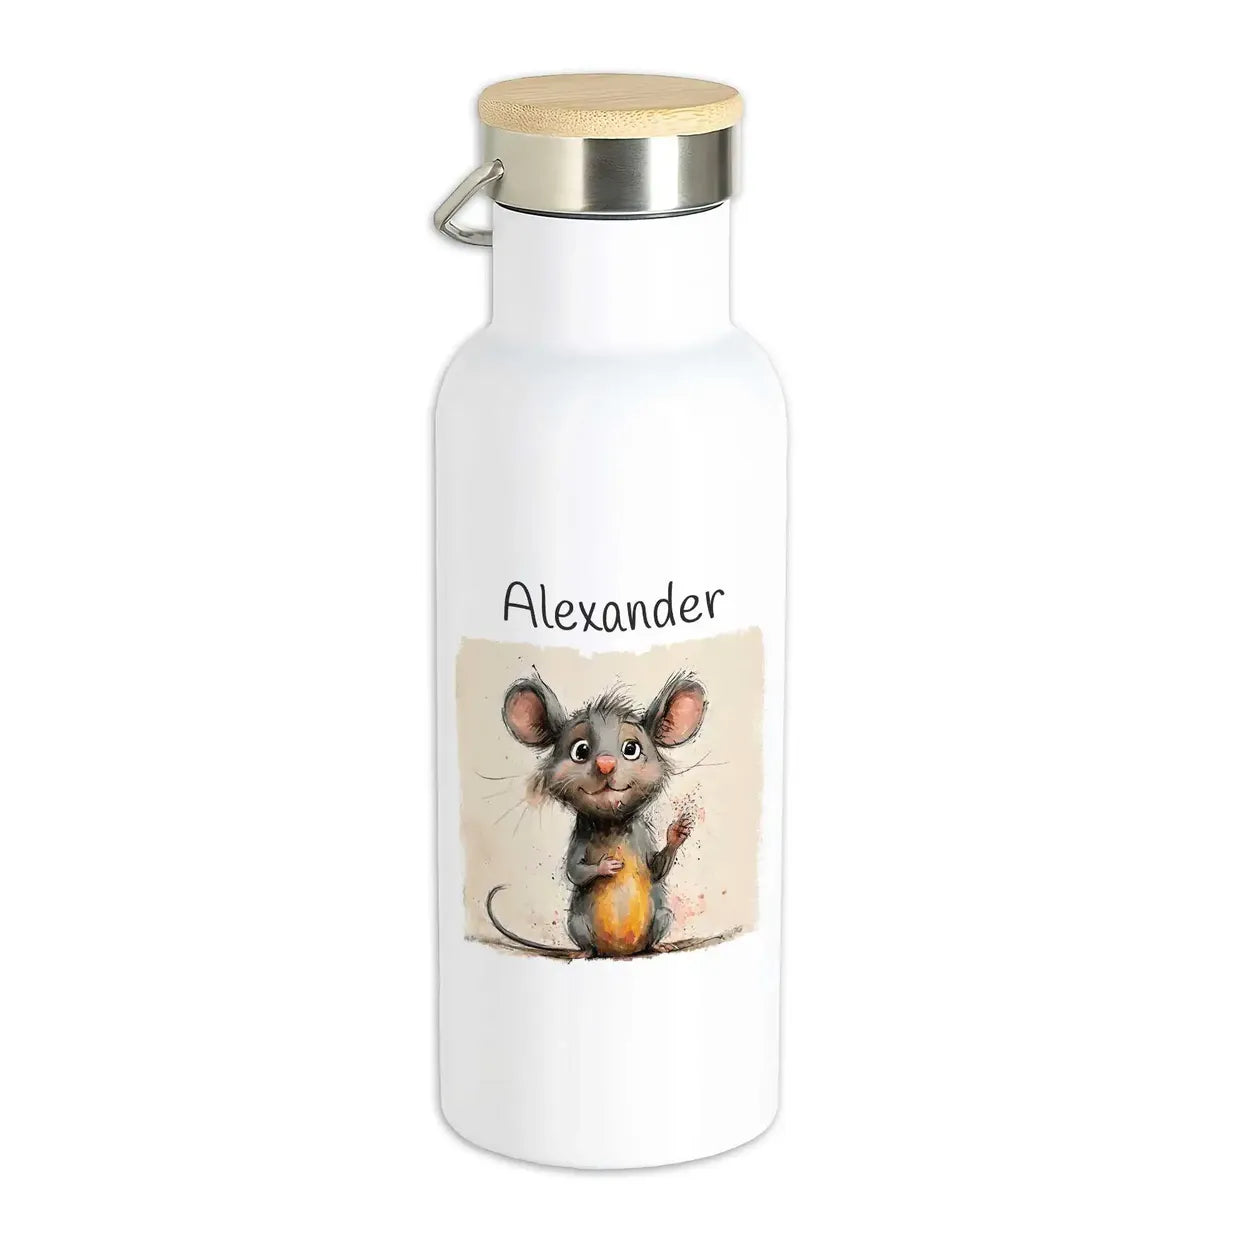 Abenteuermaus Thermo Trinkflasche für Kinder personalisiert Thermoflasche Druckerino   